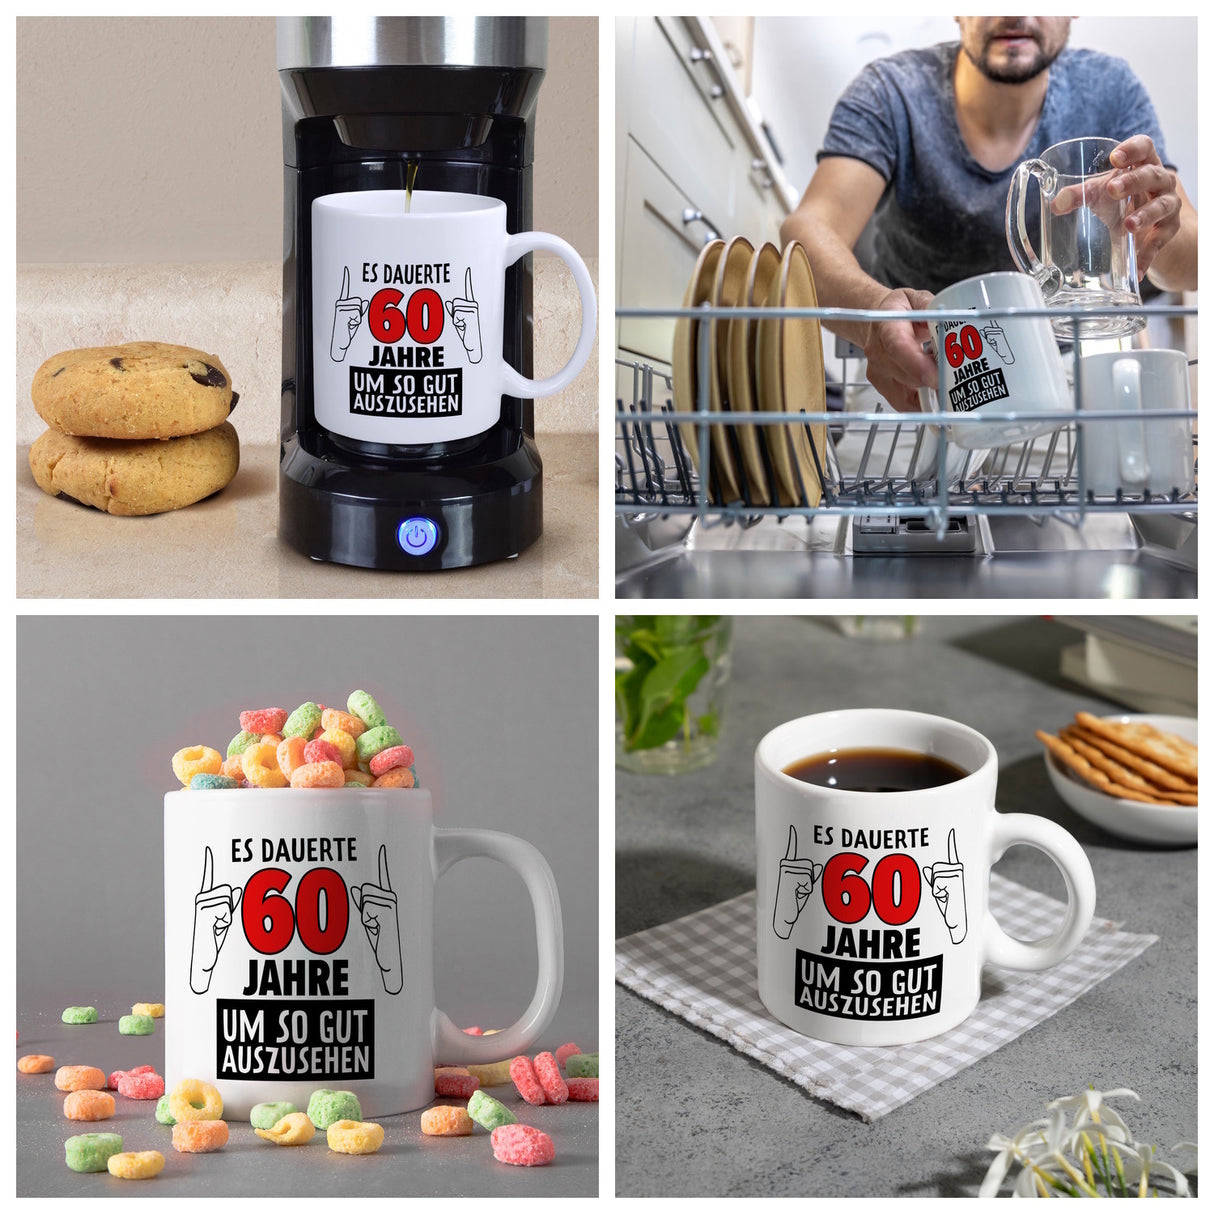 Witziger Kaffeebecher für den 60. Geburtstag mit Motiv: Gutes Aussehen